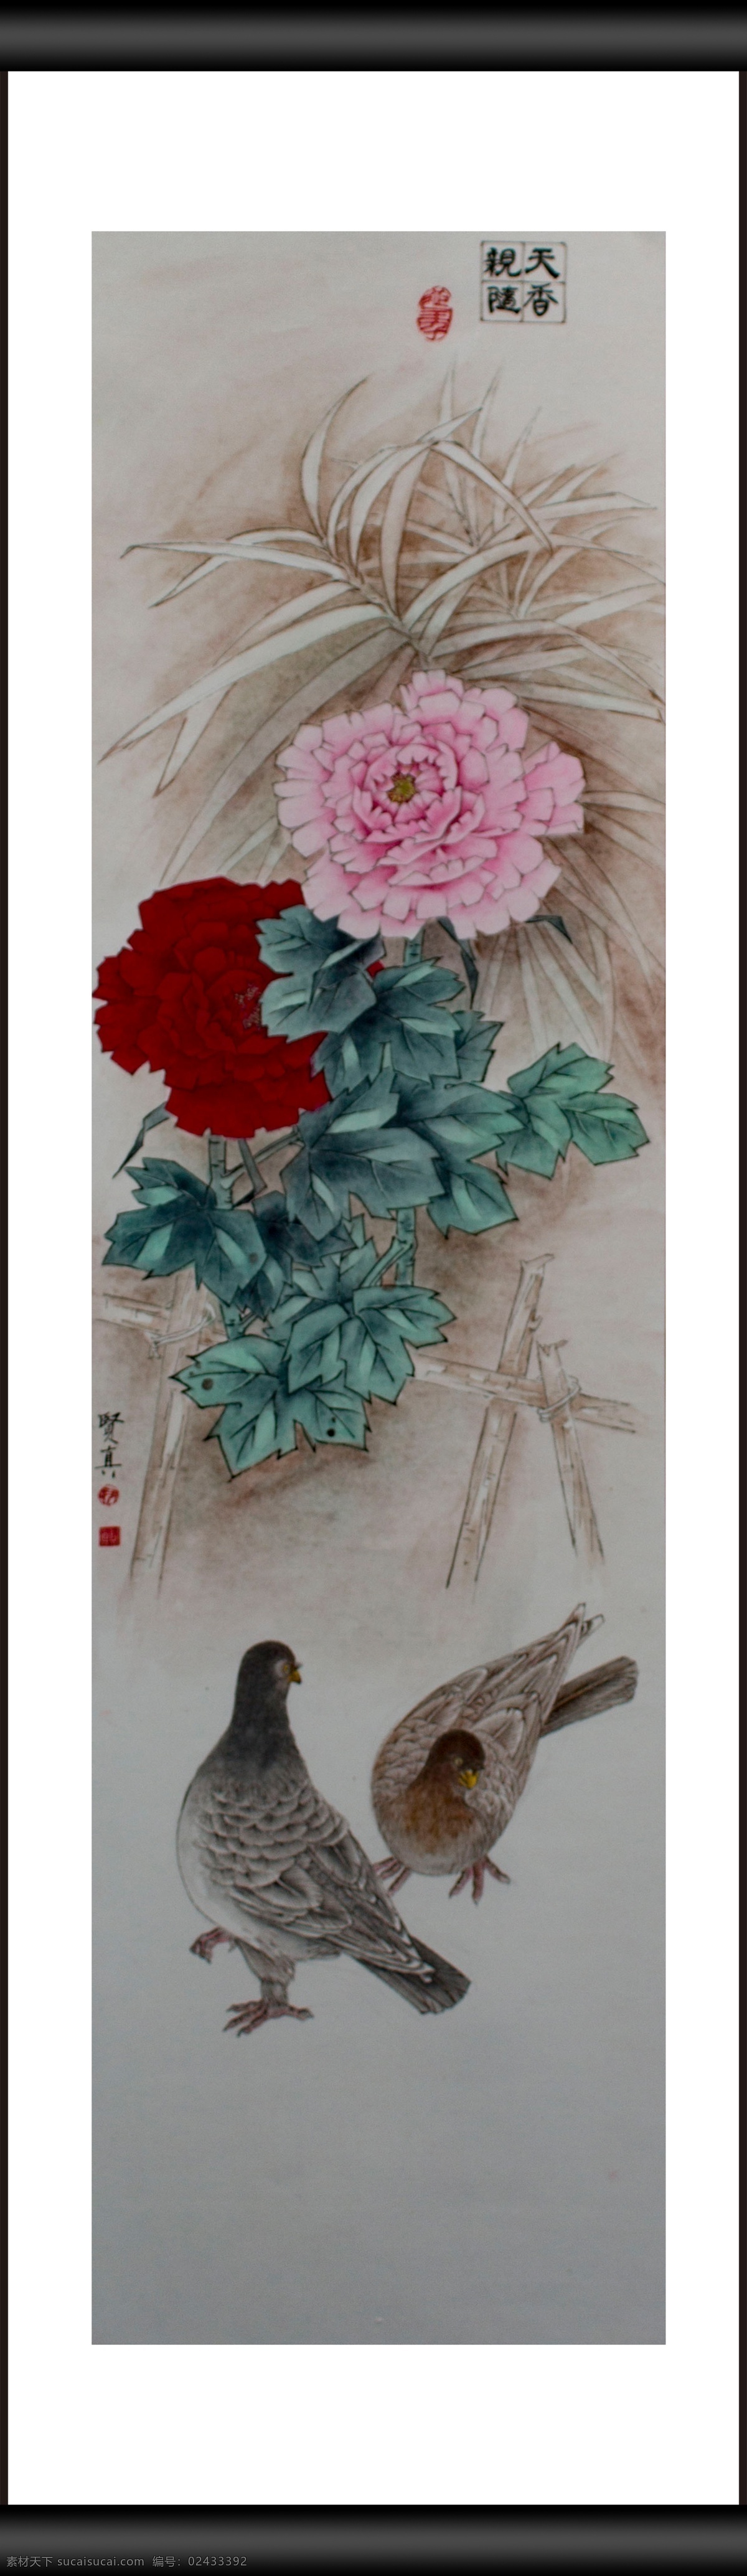 相遇天香 牡丹 国色天香 植物 花卉 观赏 鸟儿 动物 绘画 文化艺术 绘画书法